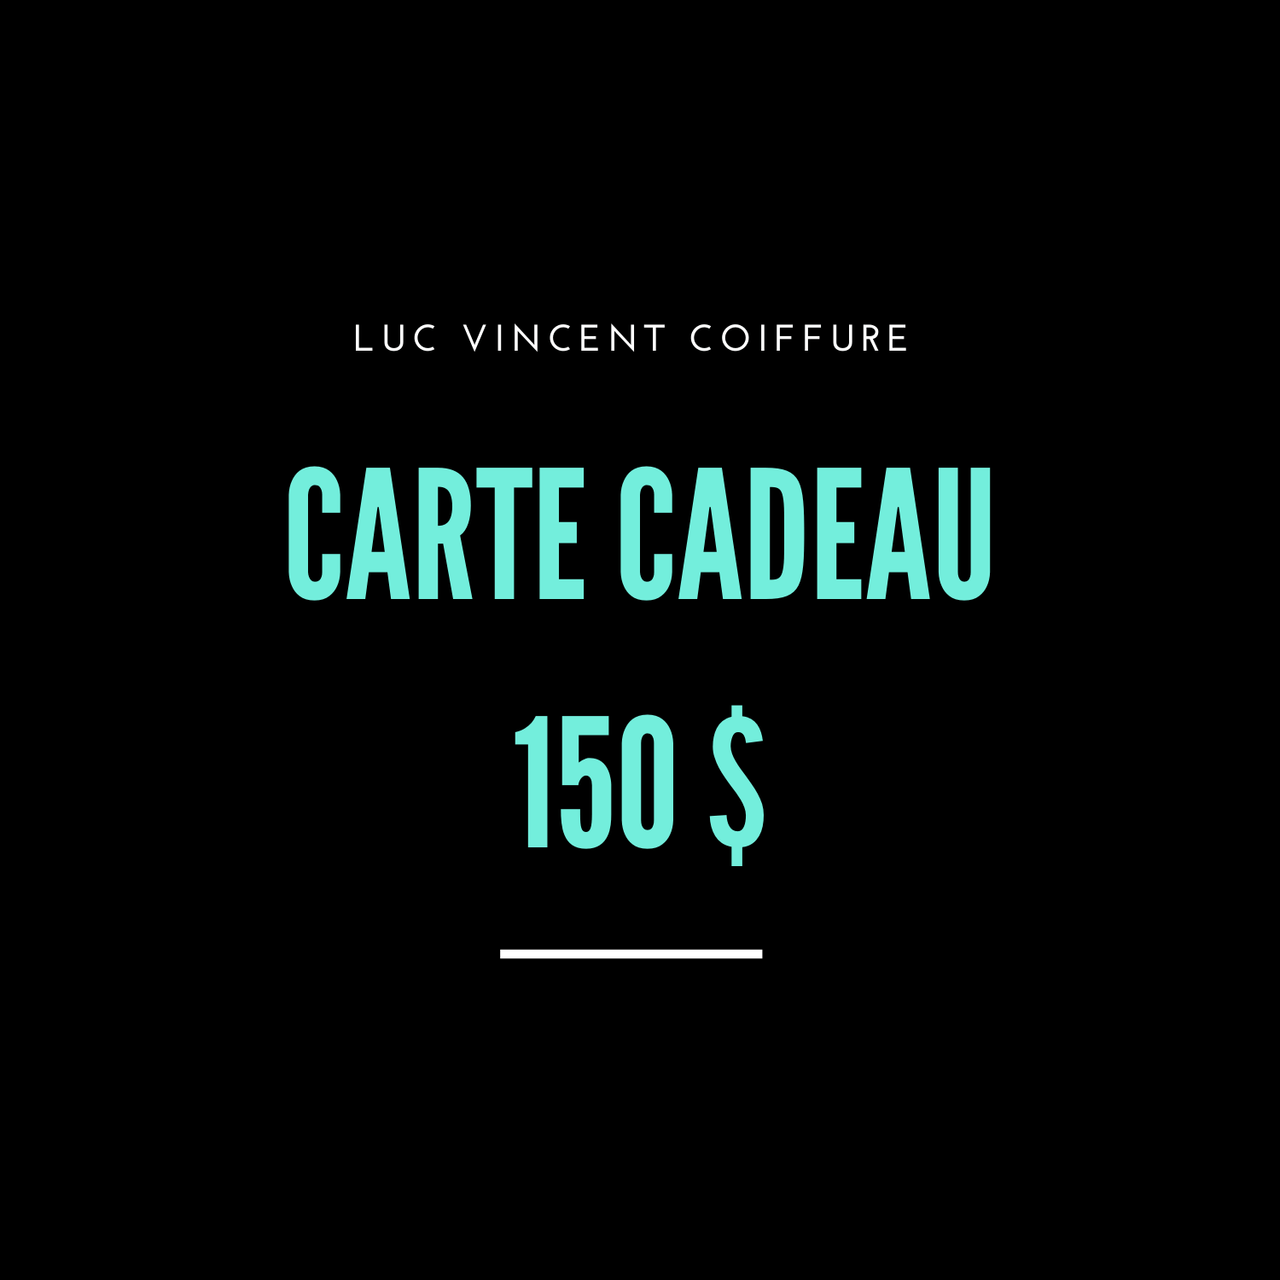 CARTE CADEAU LUC VINCENT - Luc Vincent